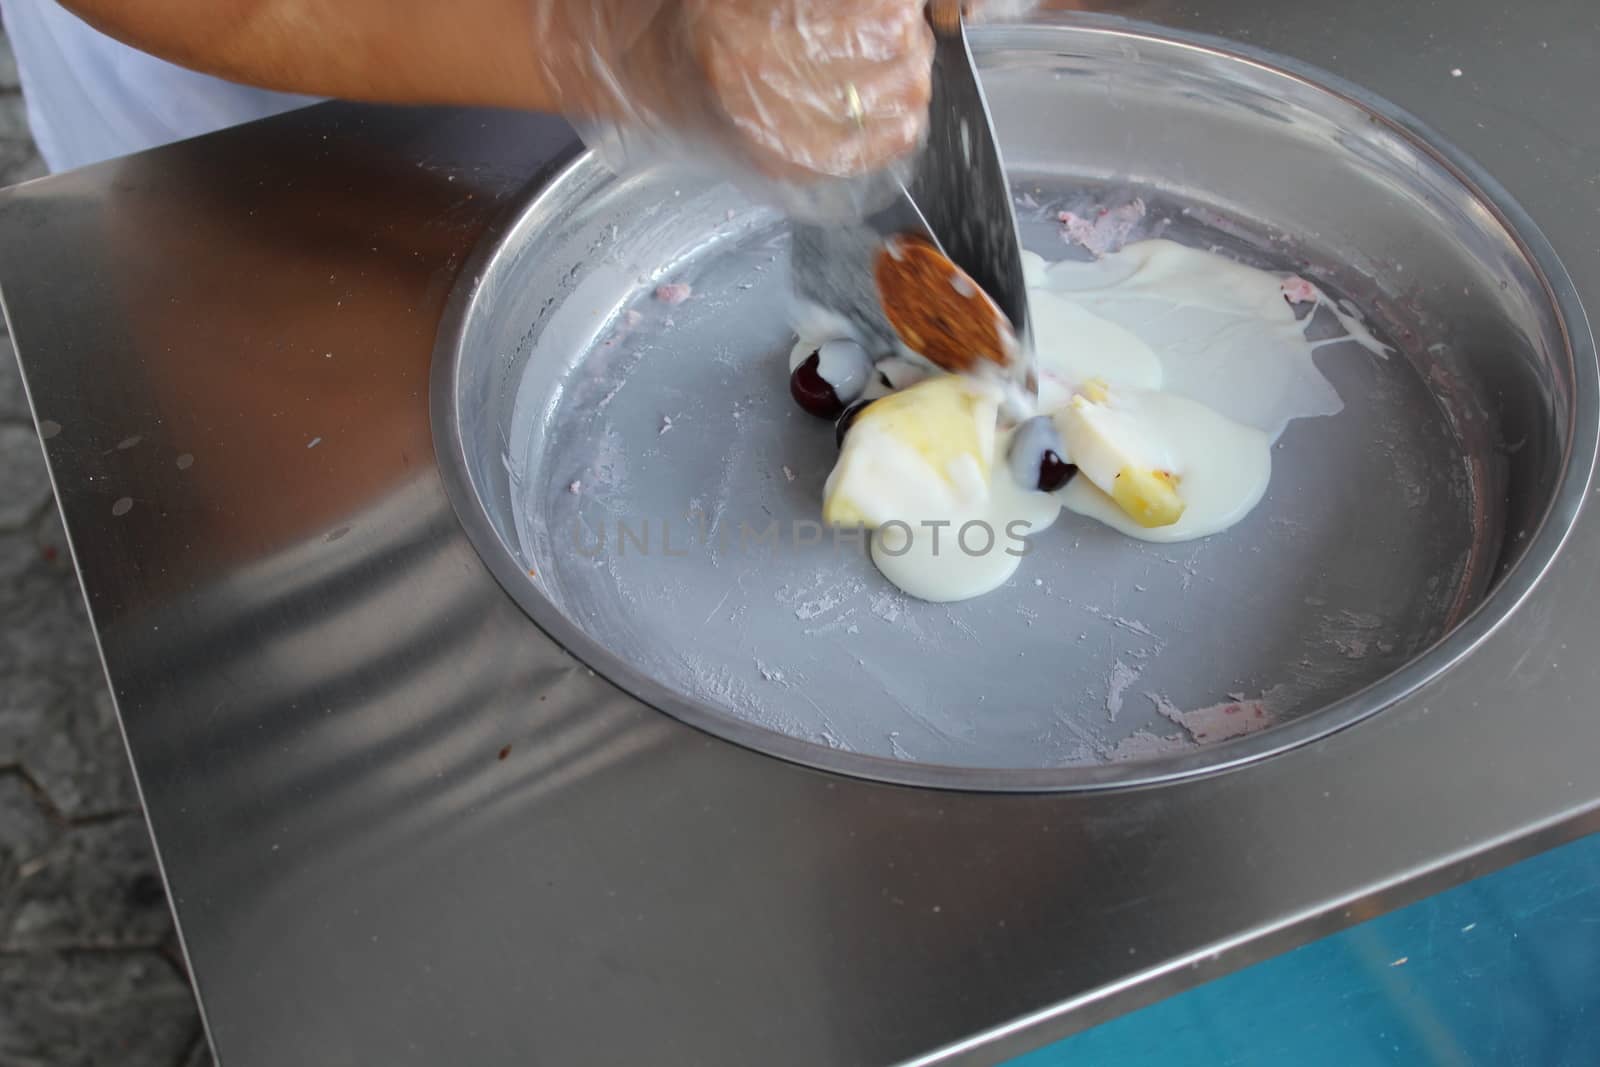 Frozen yogurt preparation. by nurjan100